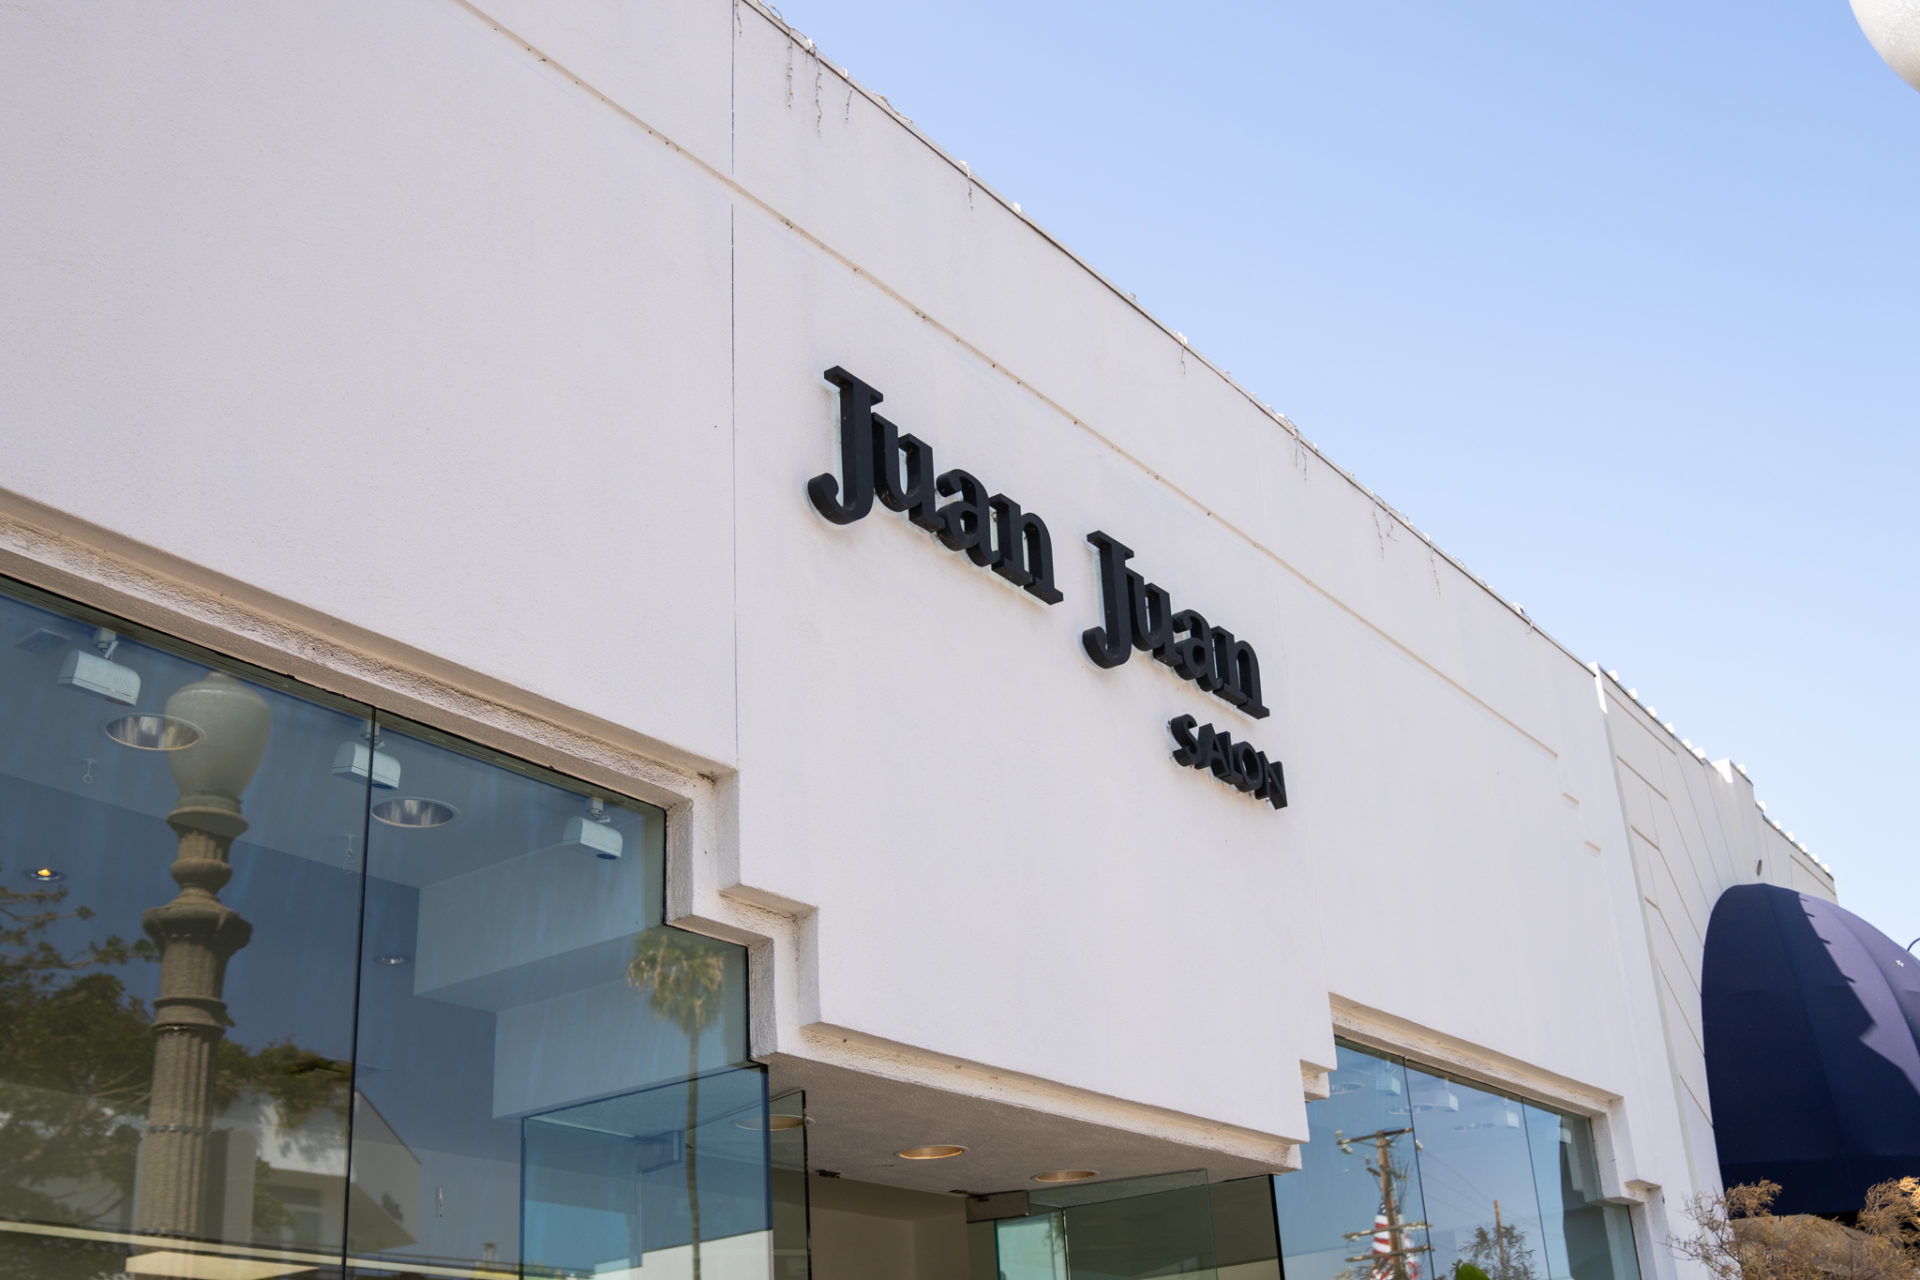 Juan Juan Salon Sign